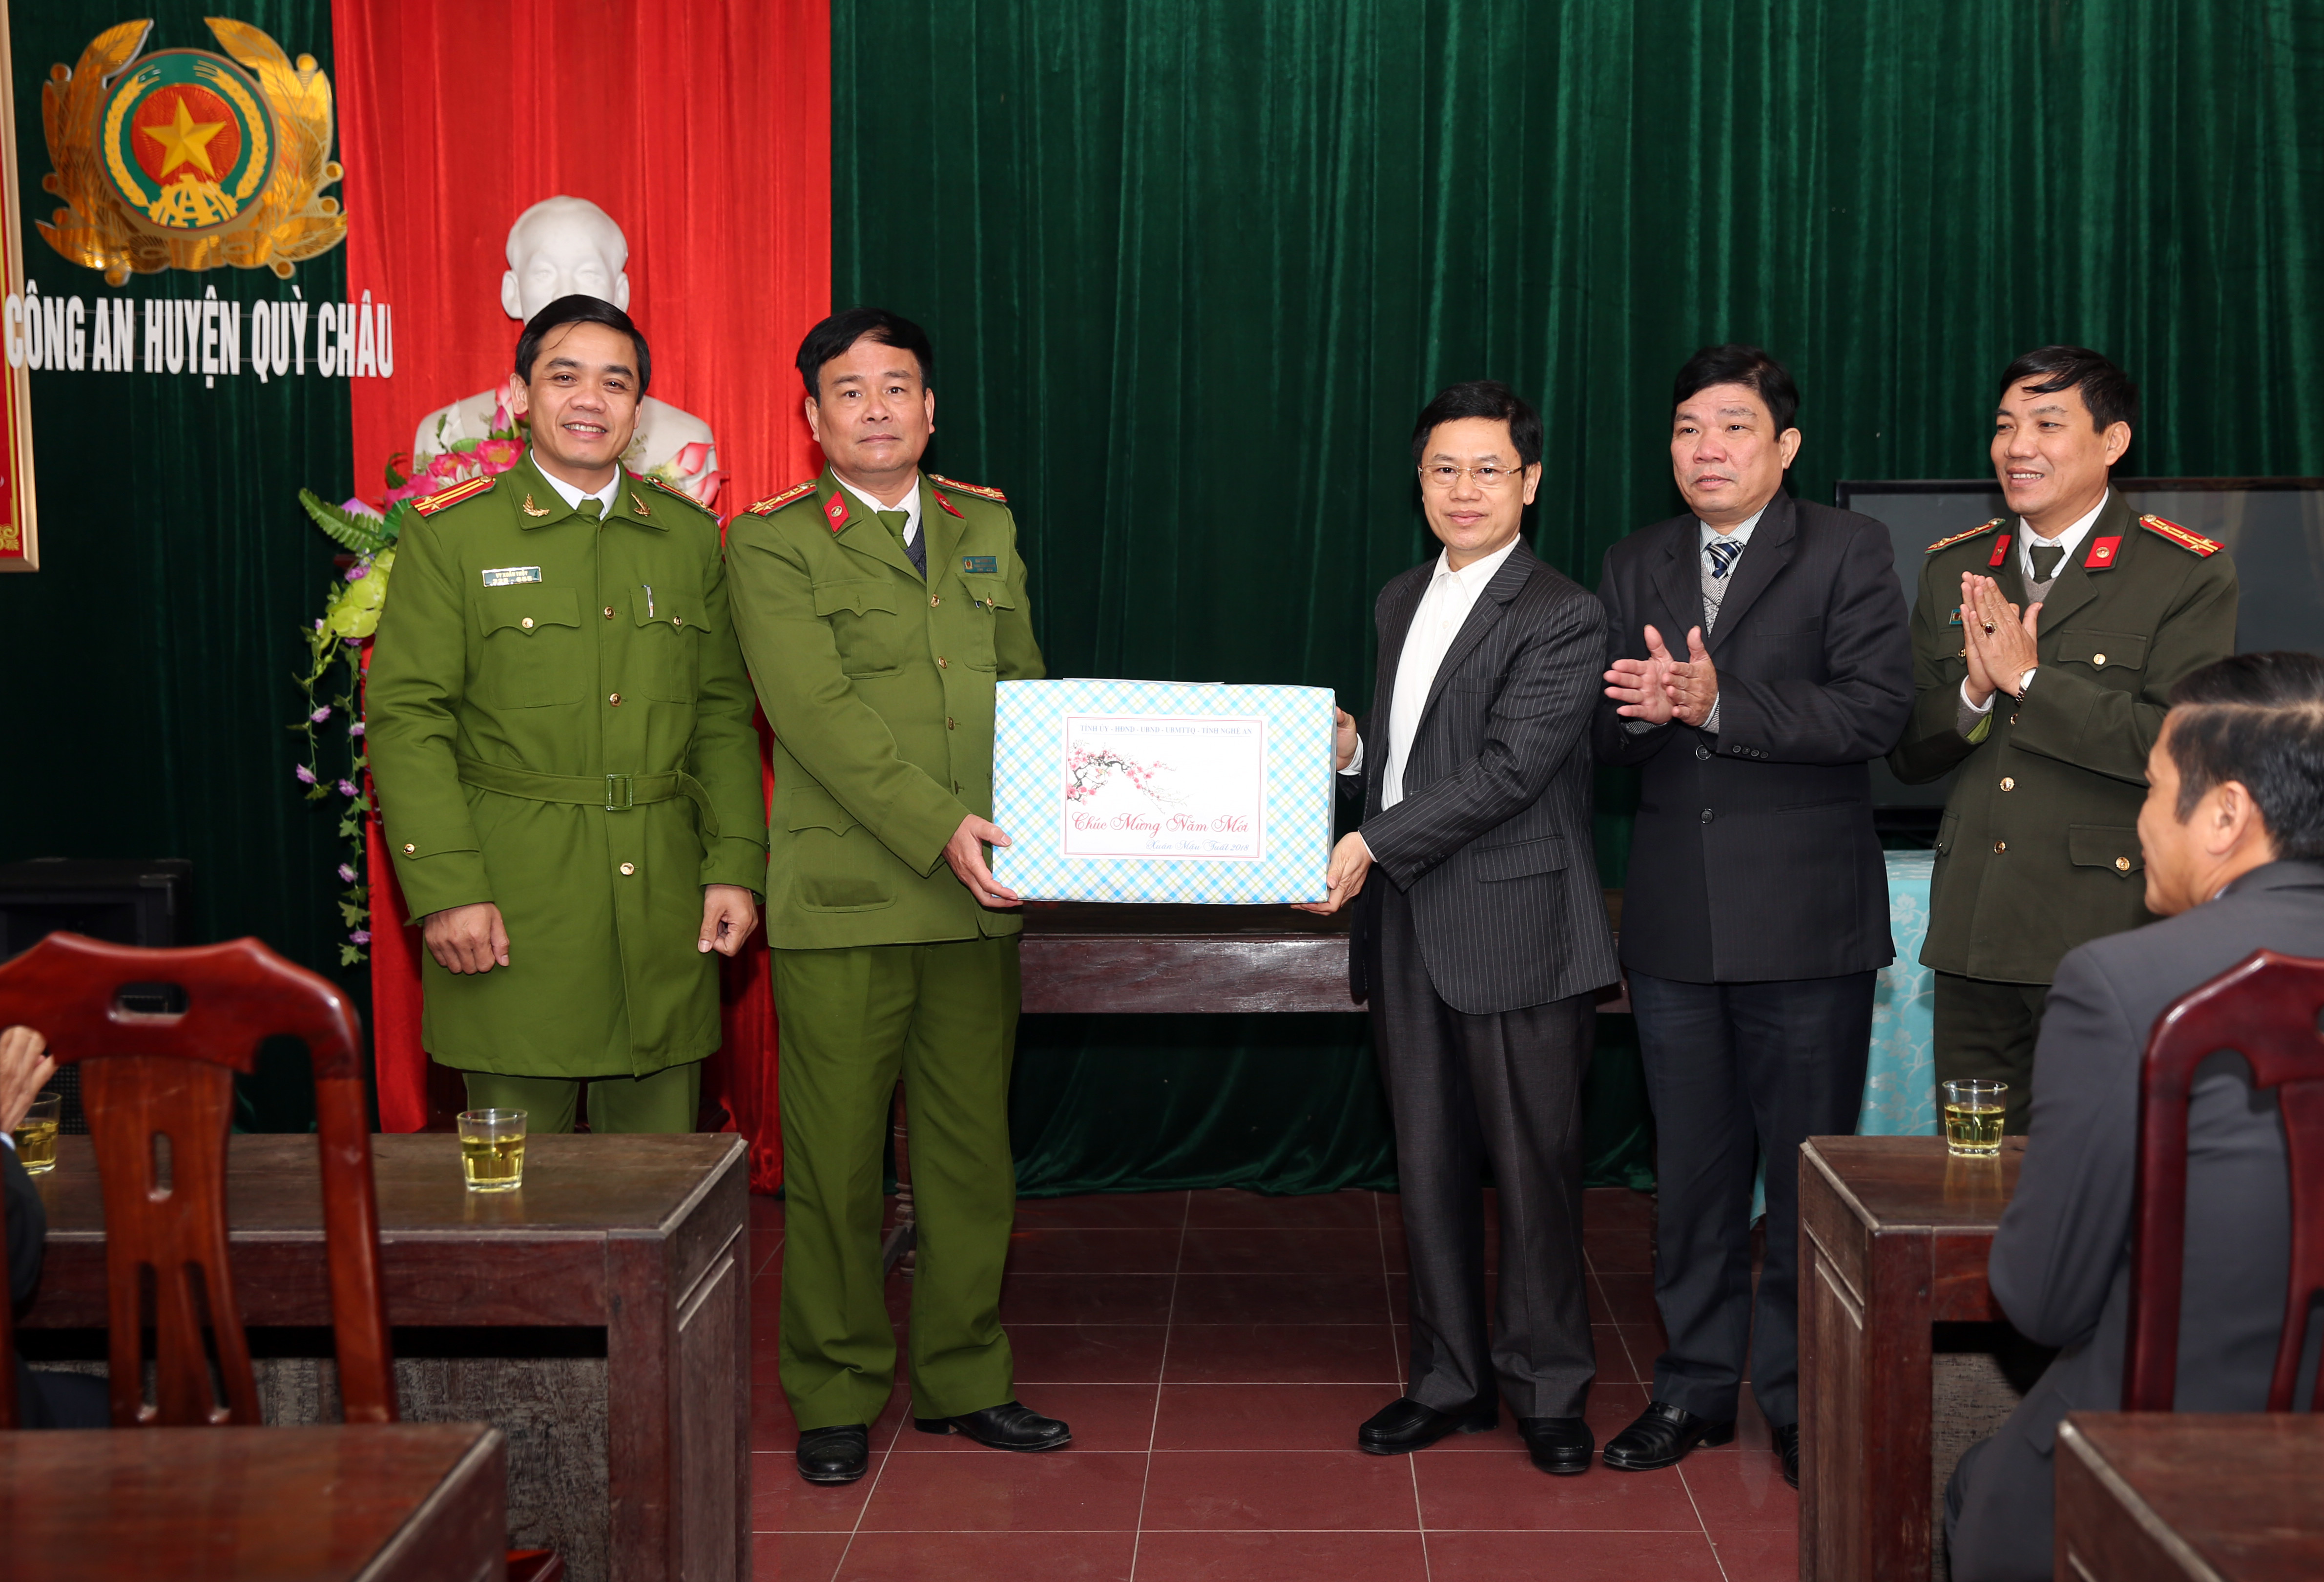 Đồng chí Phó Bí thư Tỉnh ủy tặng quà và chúc tết tại Công an huyện Quỳ Châu. Ảnh: Hồ Phương